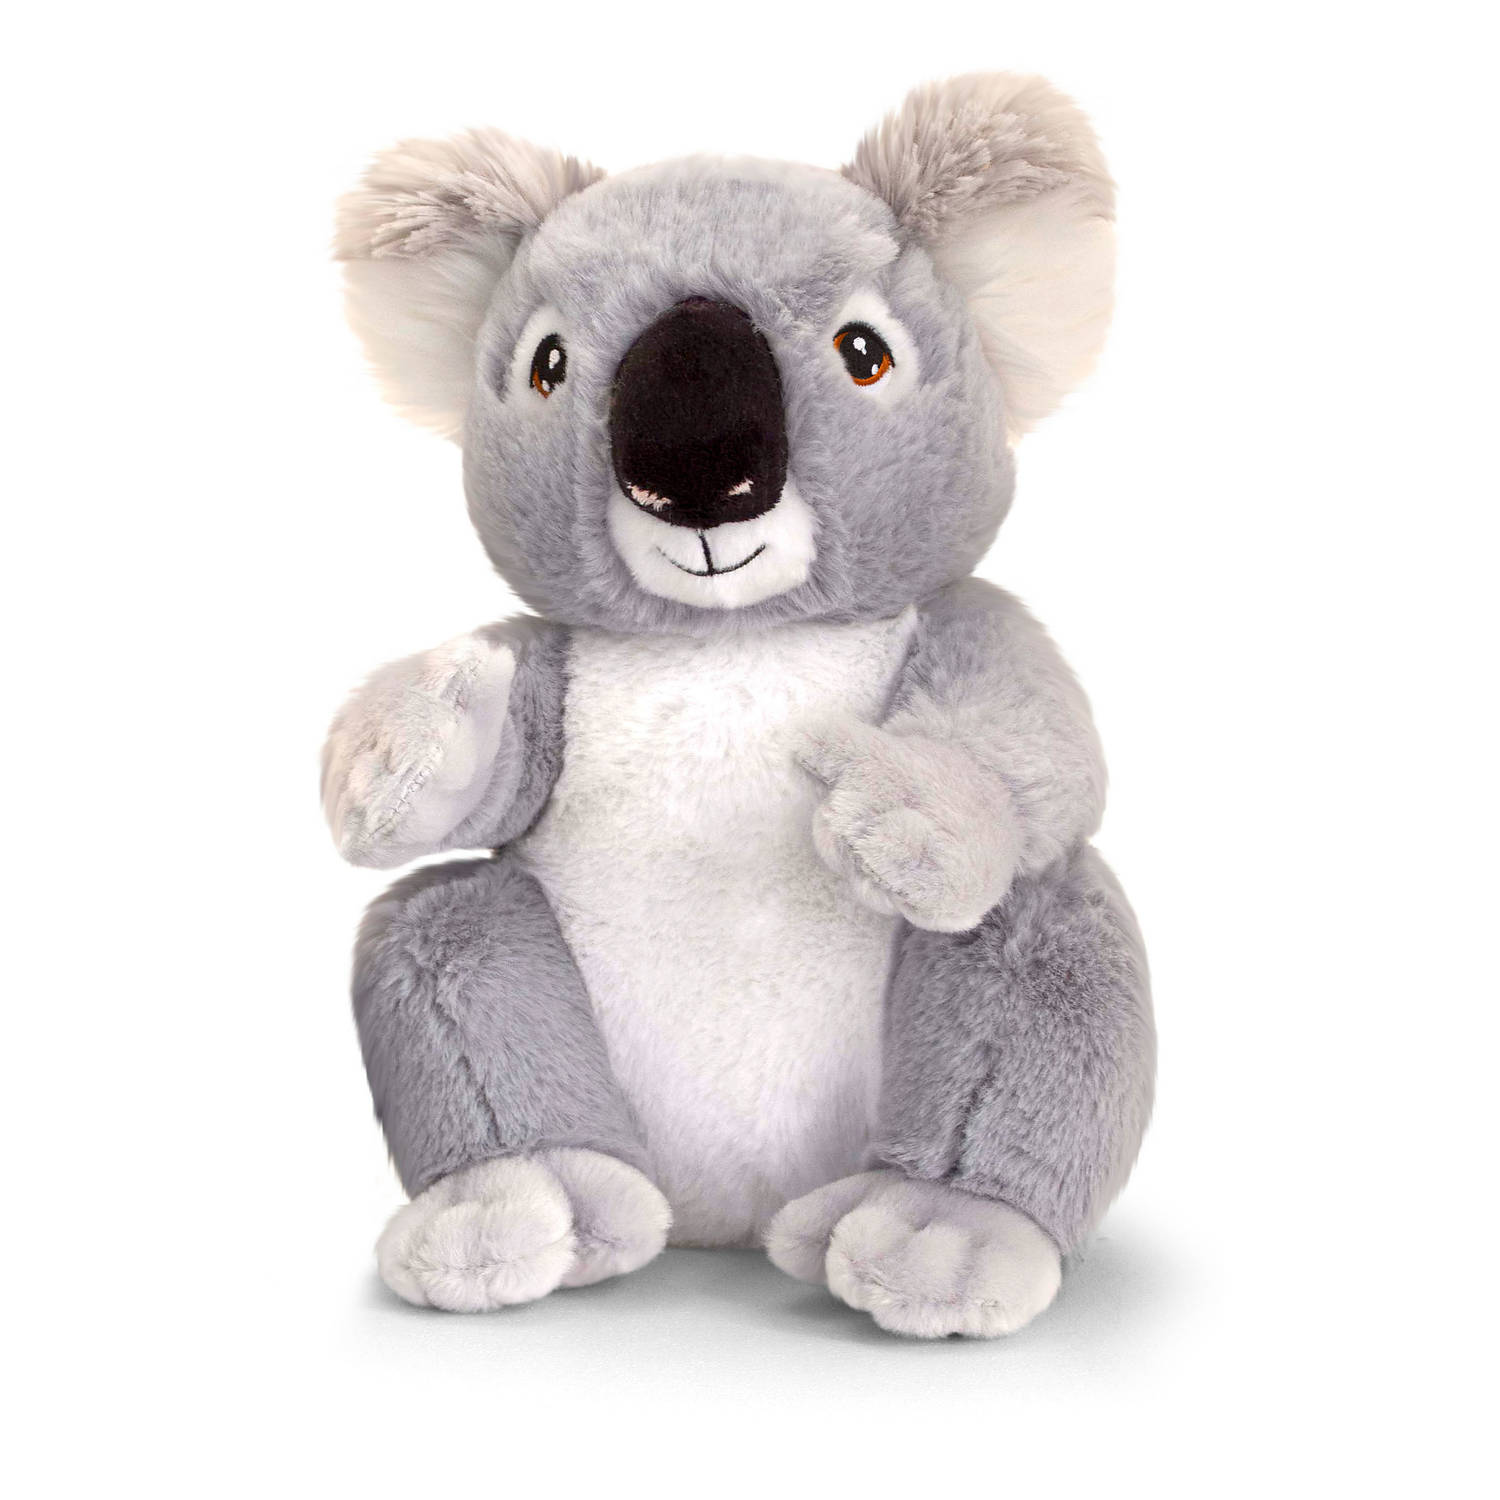 Pluche knuffel dier koala beer 26 cm - Knuffeldier